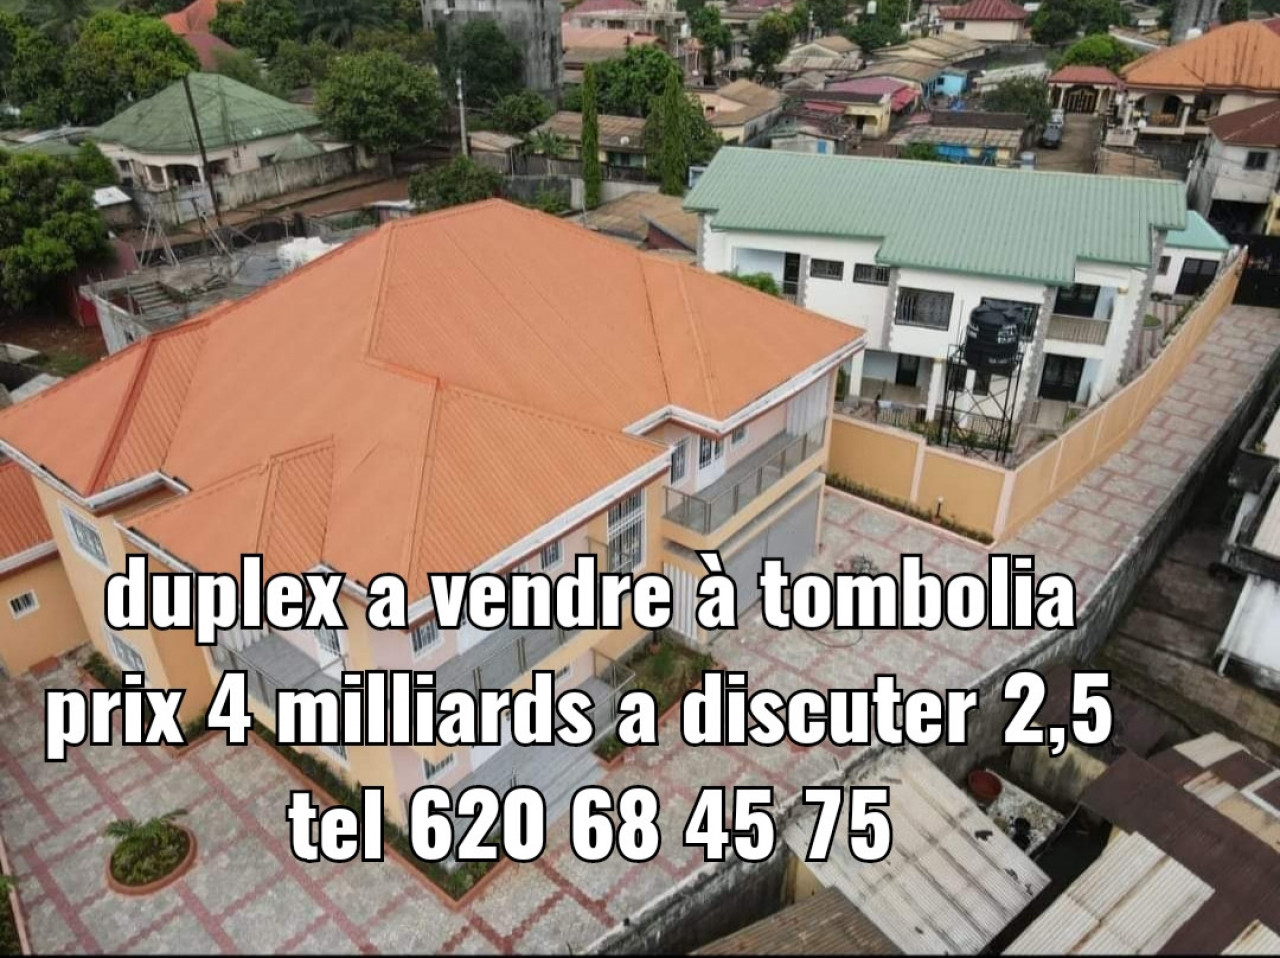 Différents Bâtiments à Tombolia, Maisons, Conakry